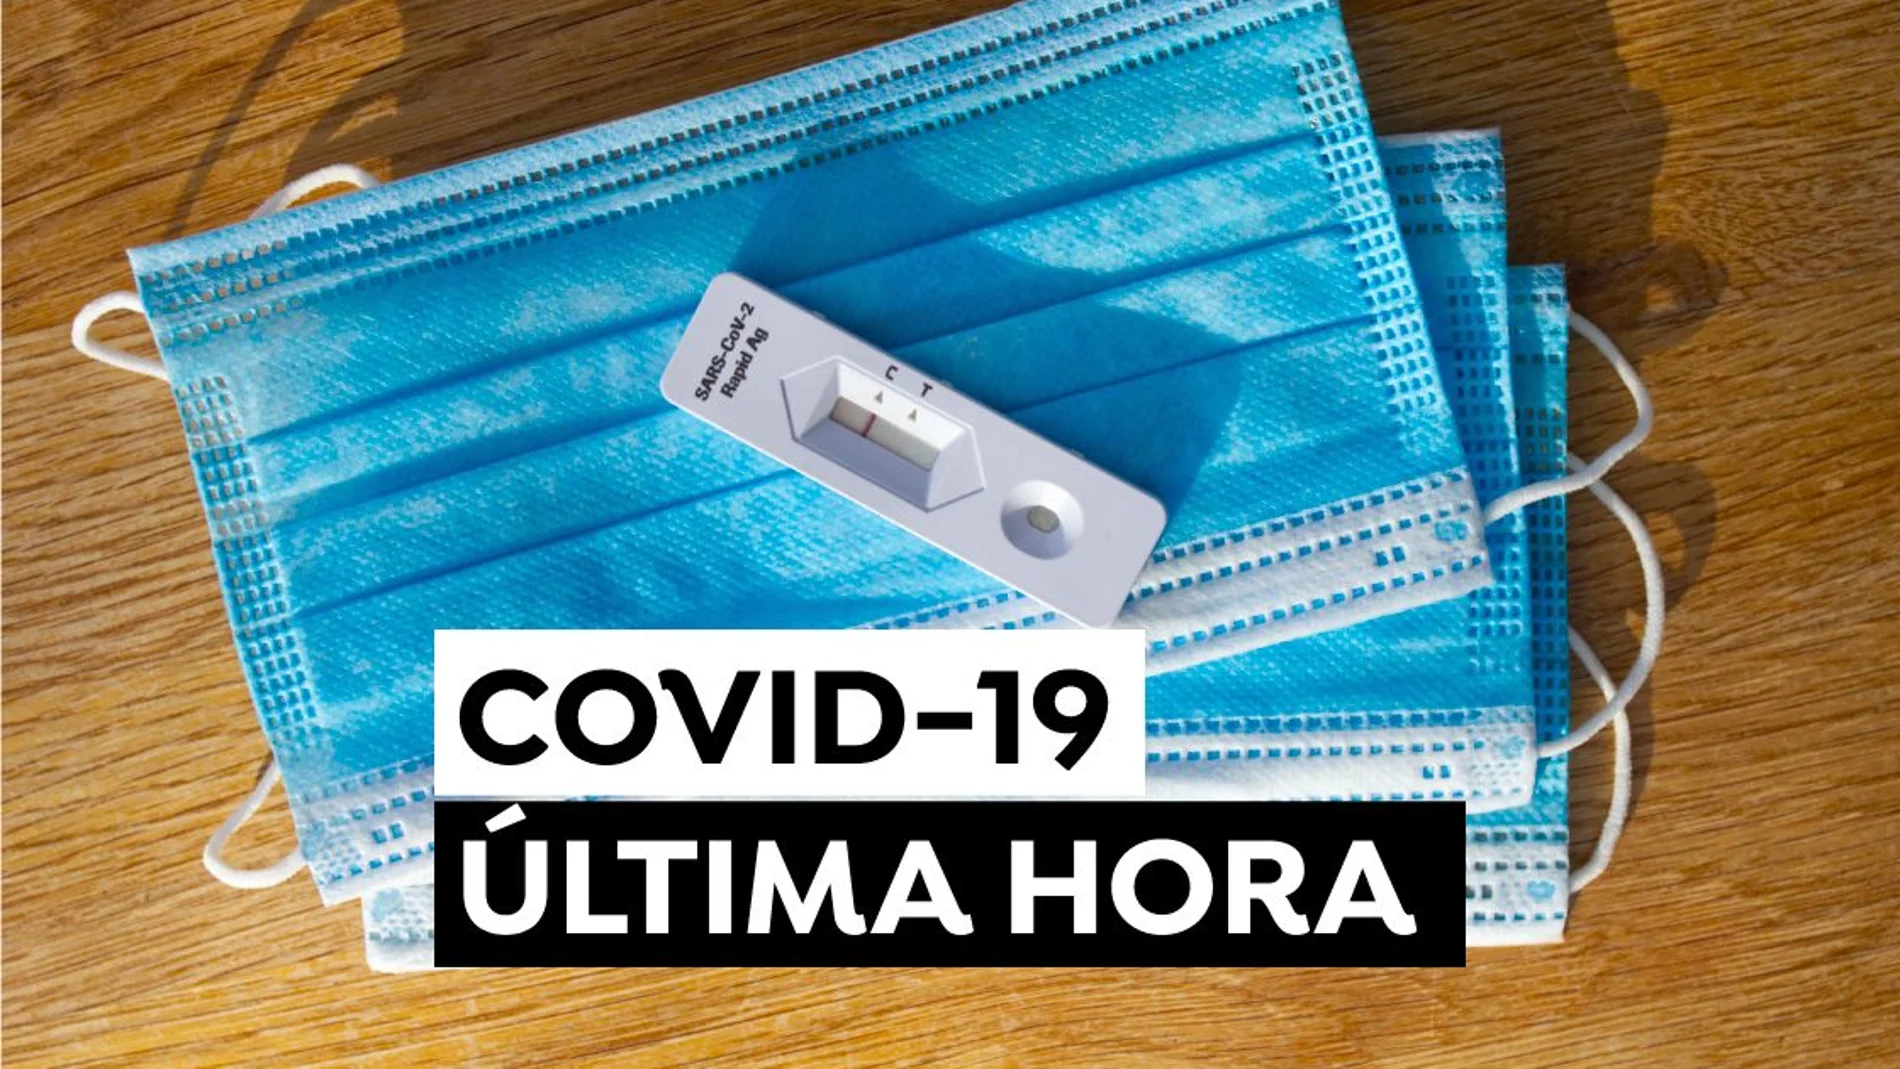 Coronavirus en España hoy, última hora del COVID-19 en directo: Datos de contagios, test de antígenos y variante ómicron